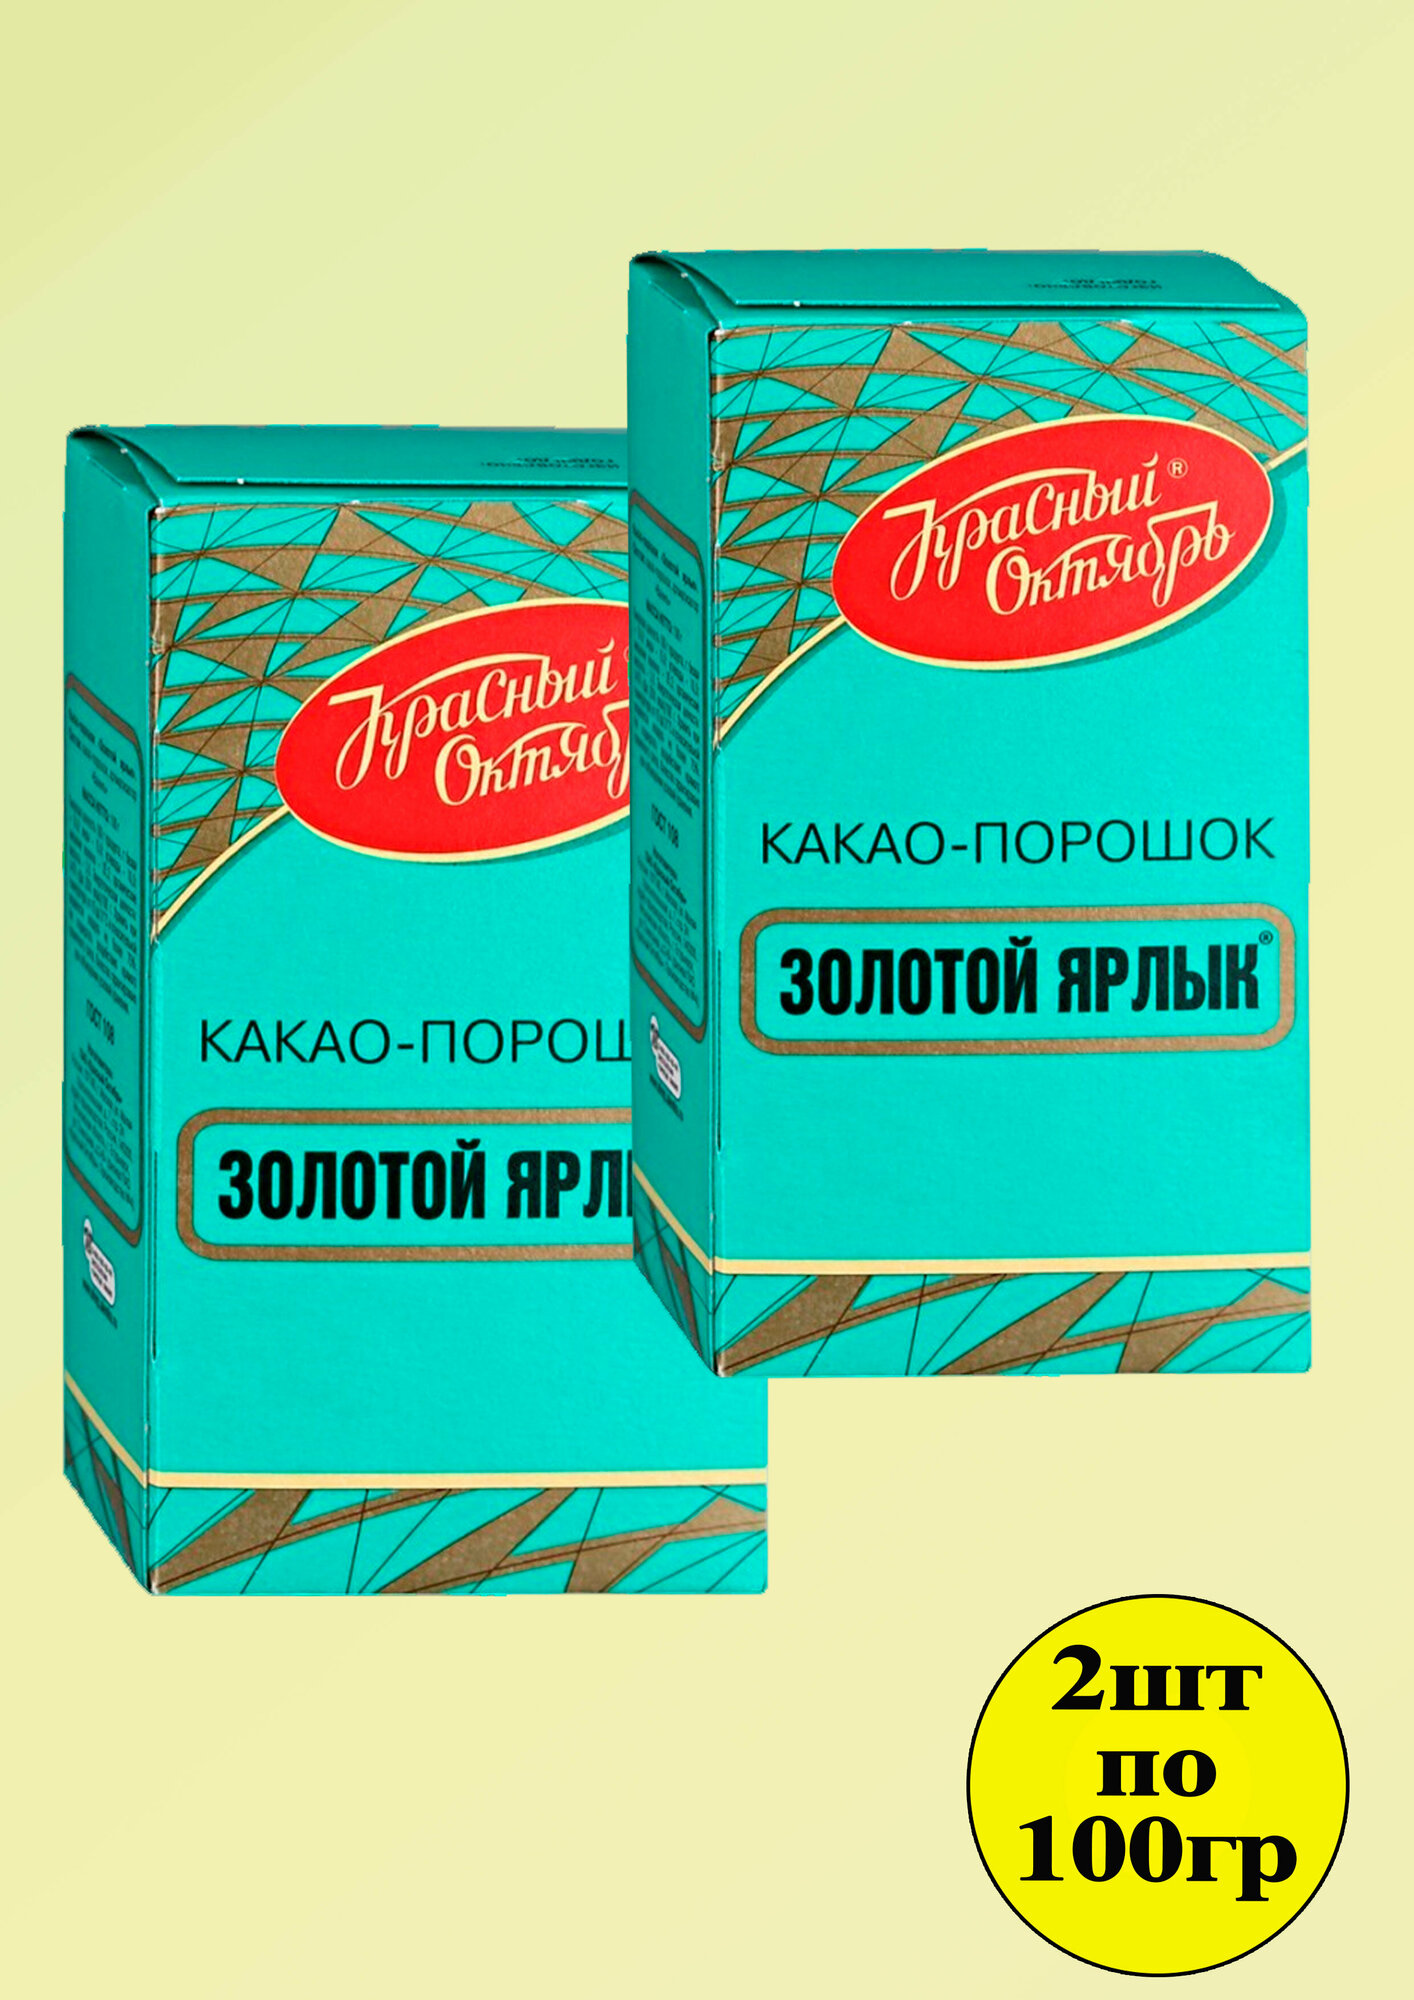 Какао порошок Золотой ярлык 2 шт по 100 гр Красный октябрь